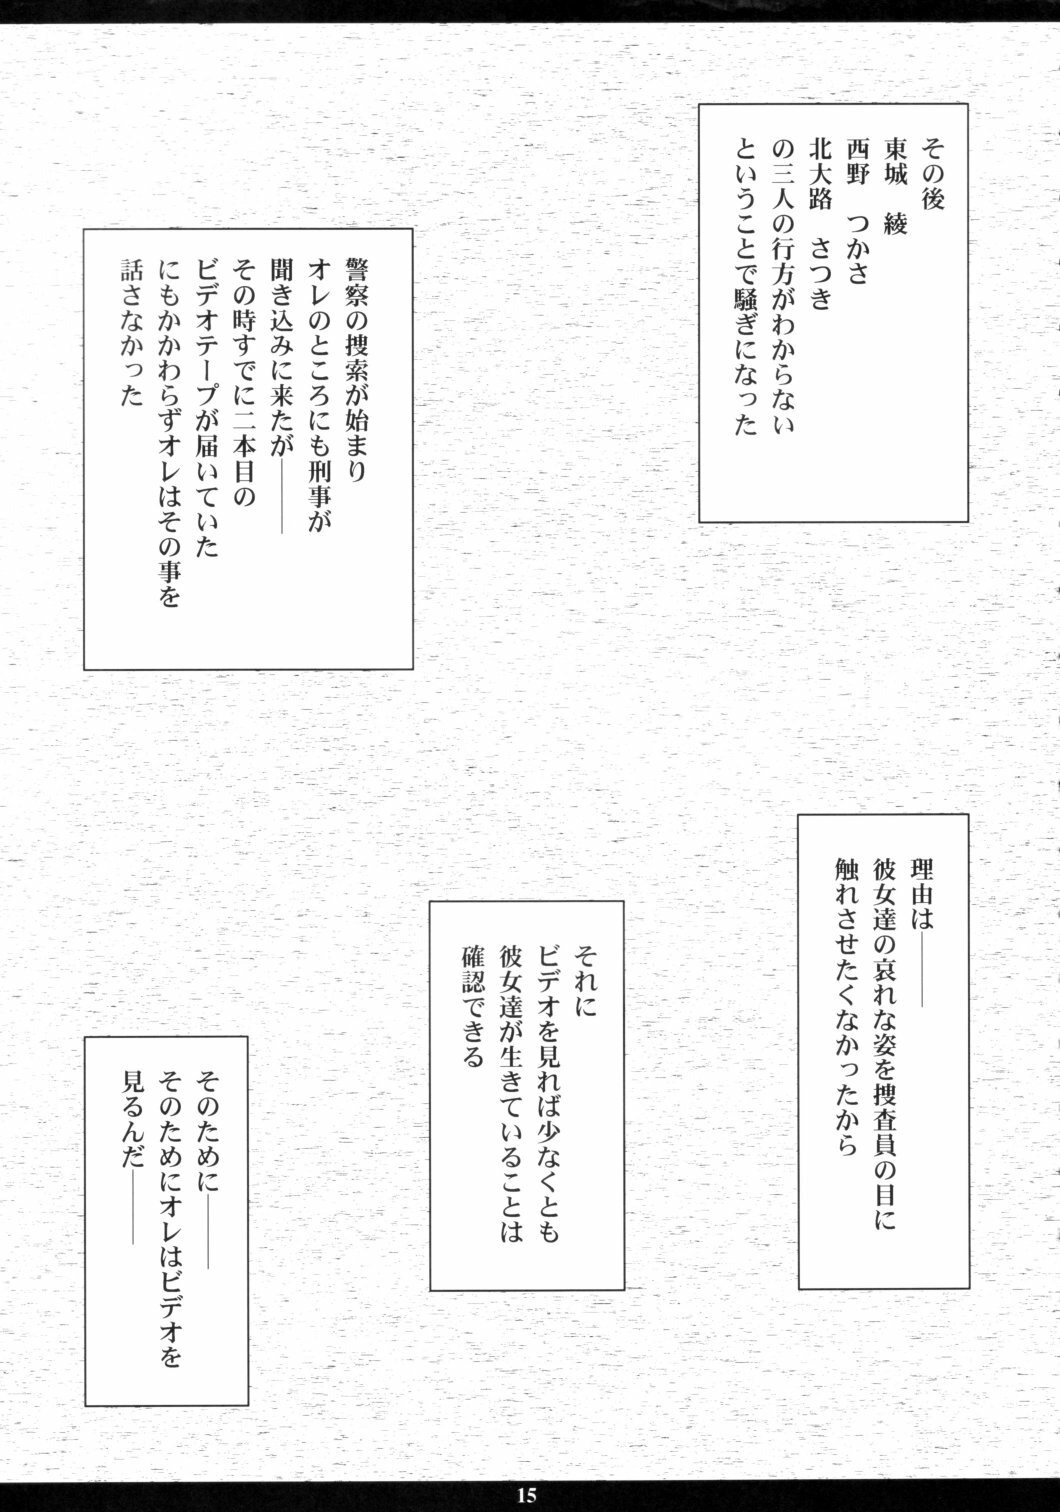 [M (Amano Ameno)] Ichigo MAX% (Ichigo 100%) [2003-02] page 14 full